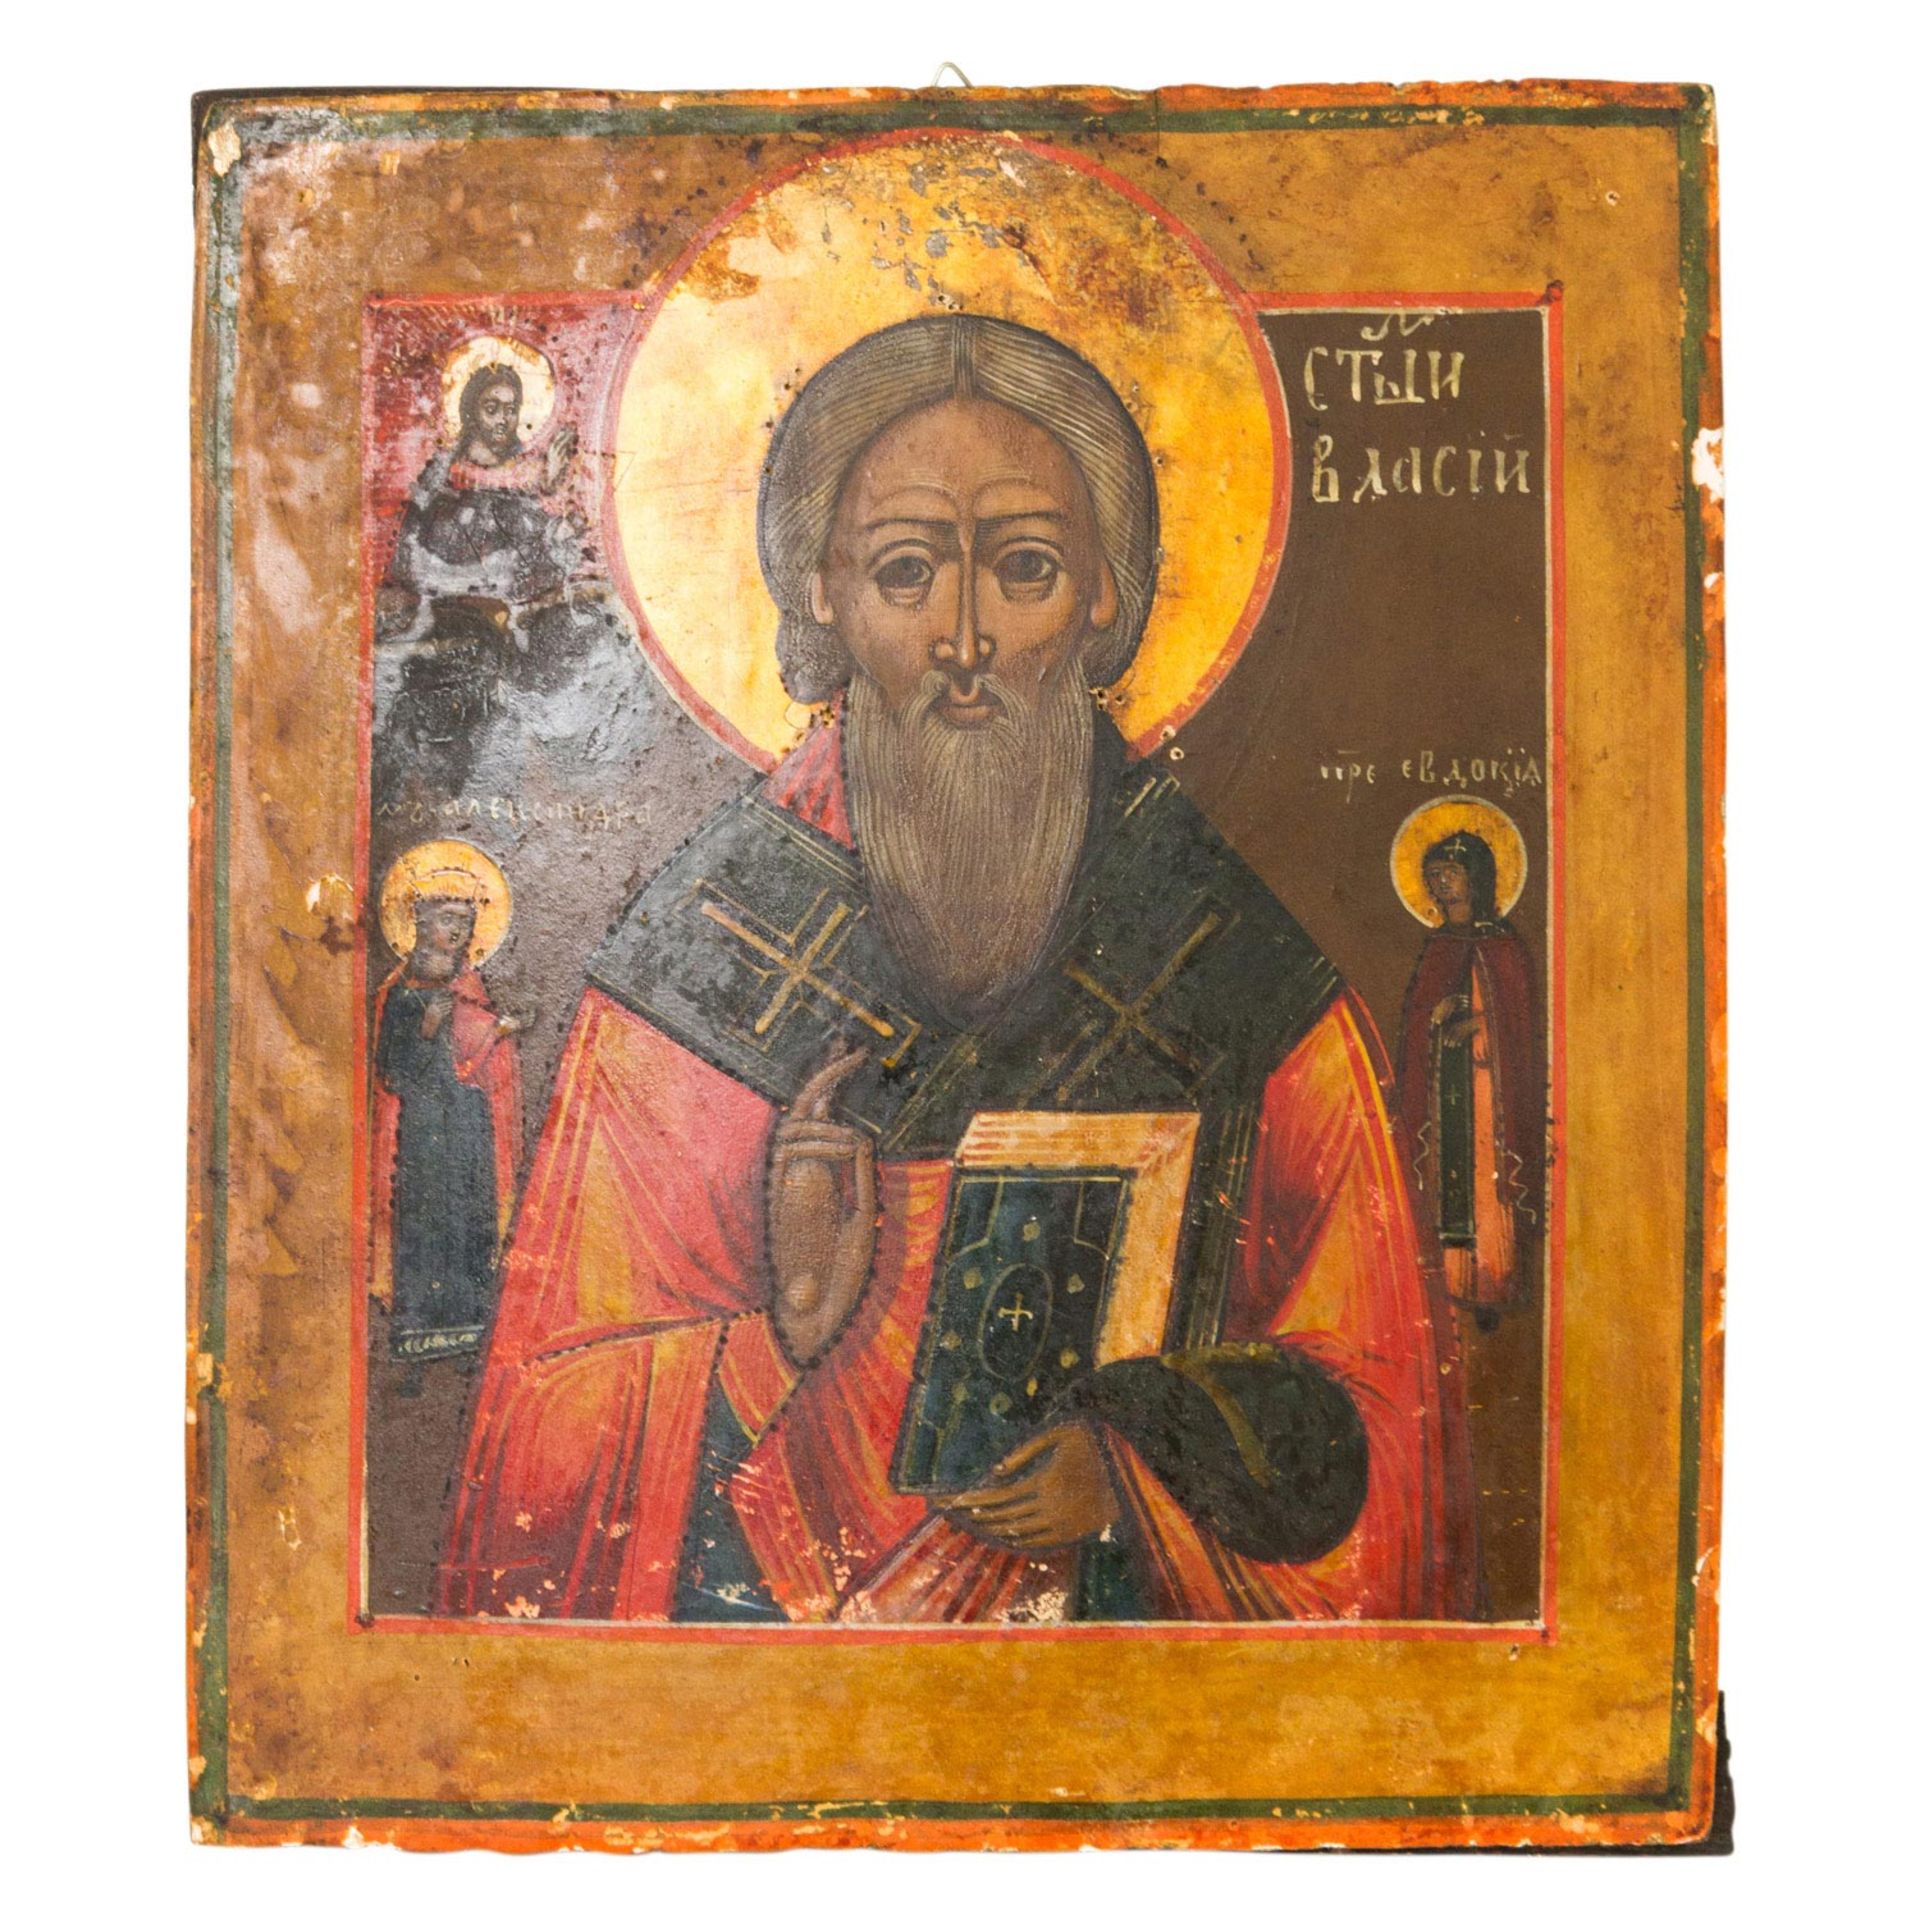 IKONE "Heiliger Blasius", Russland 19. Jh., frontale Darstellung des Heiligen mit Segensgestus und